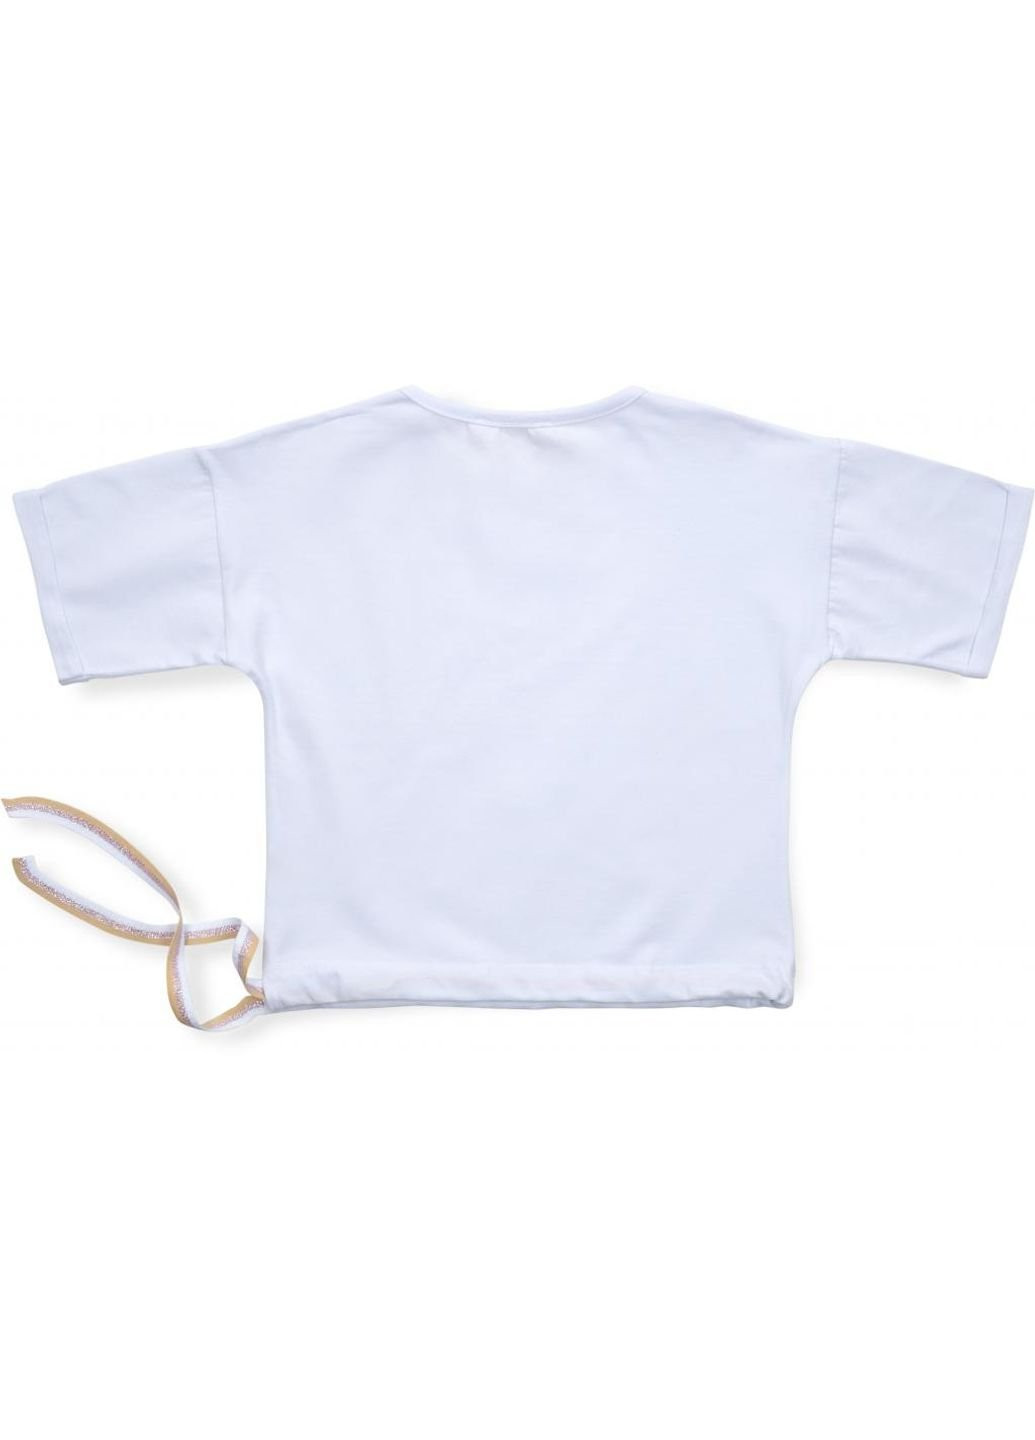 Белая летняя футболка детская одяг с пайеткой (3126-122g-white) Smile